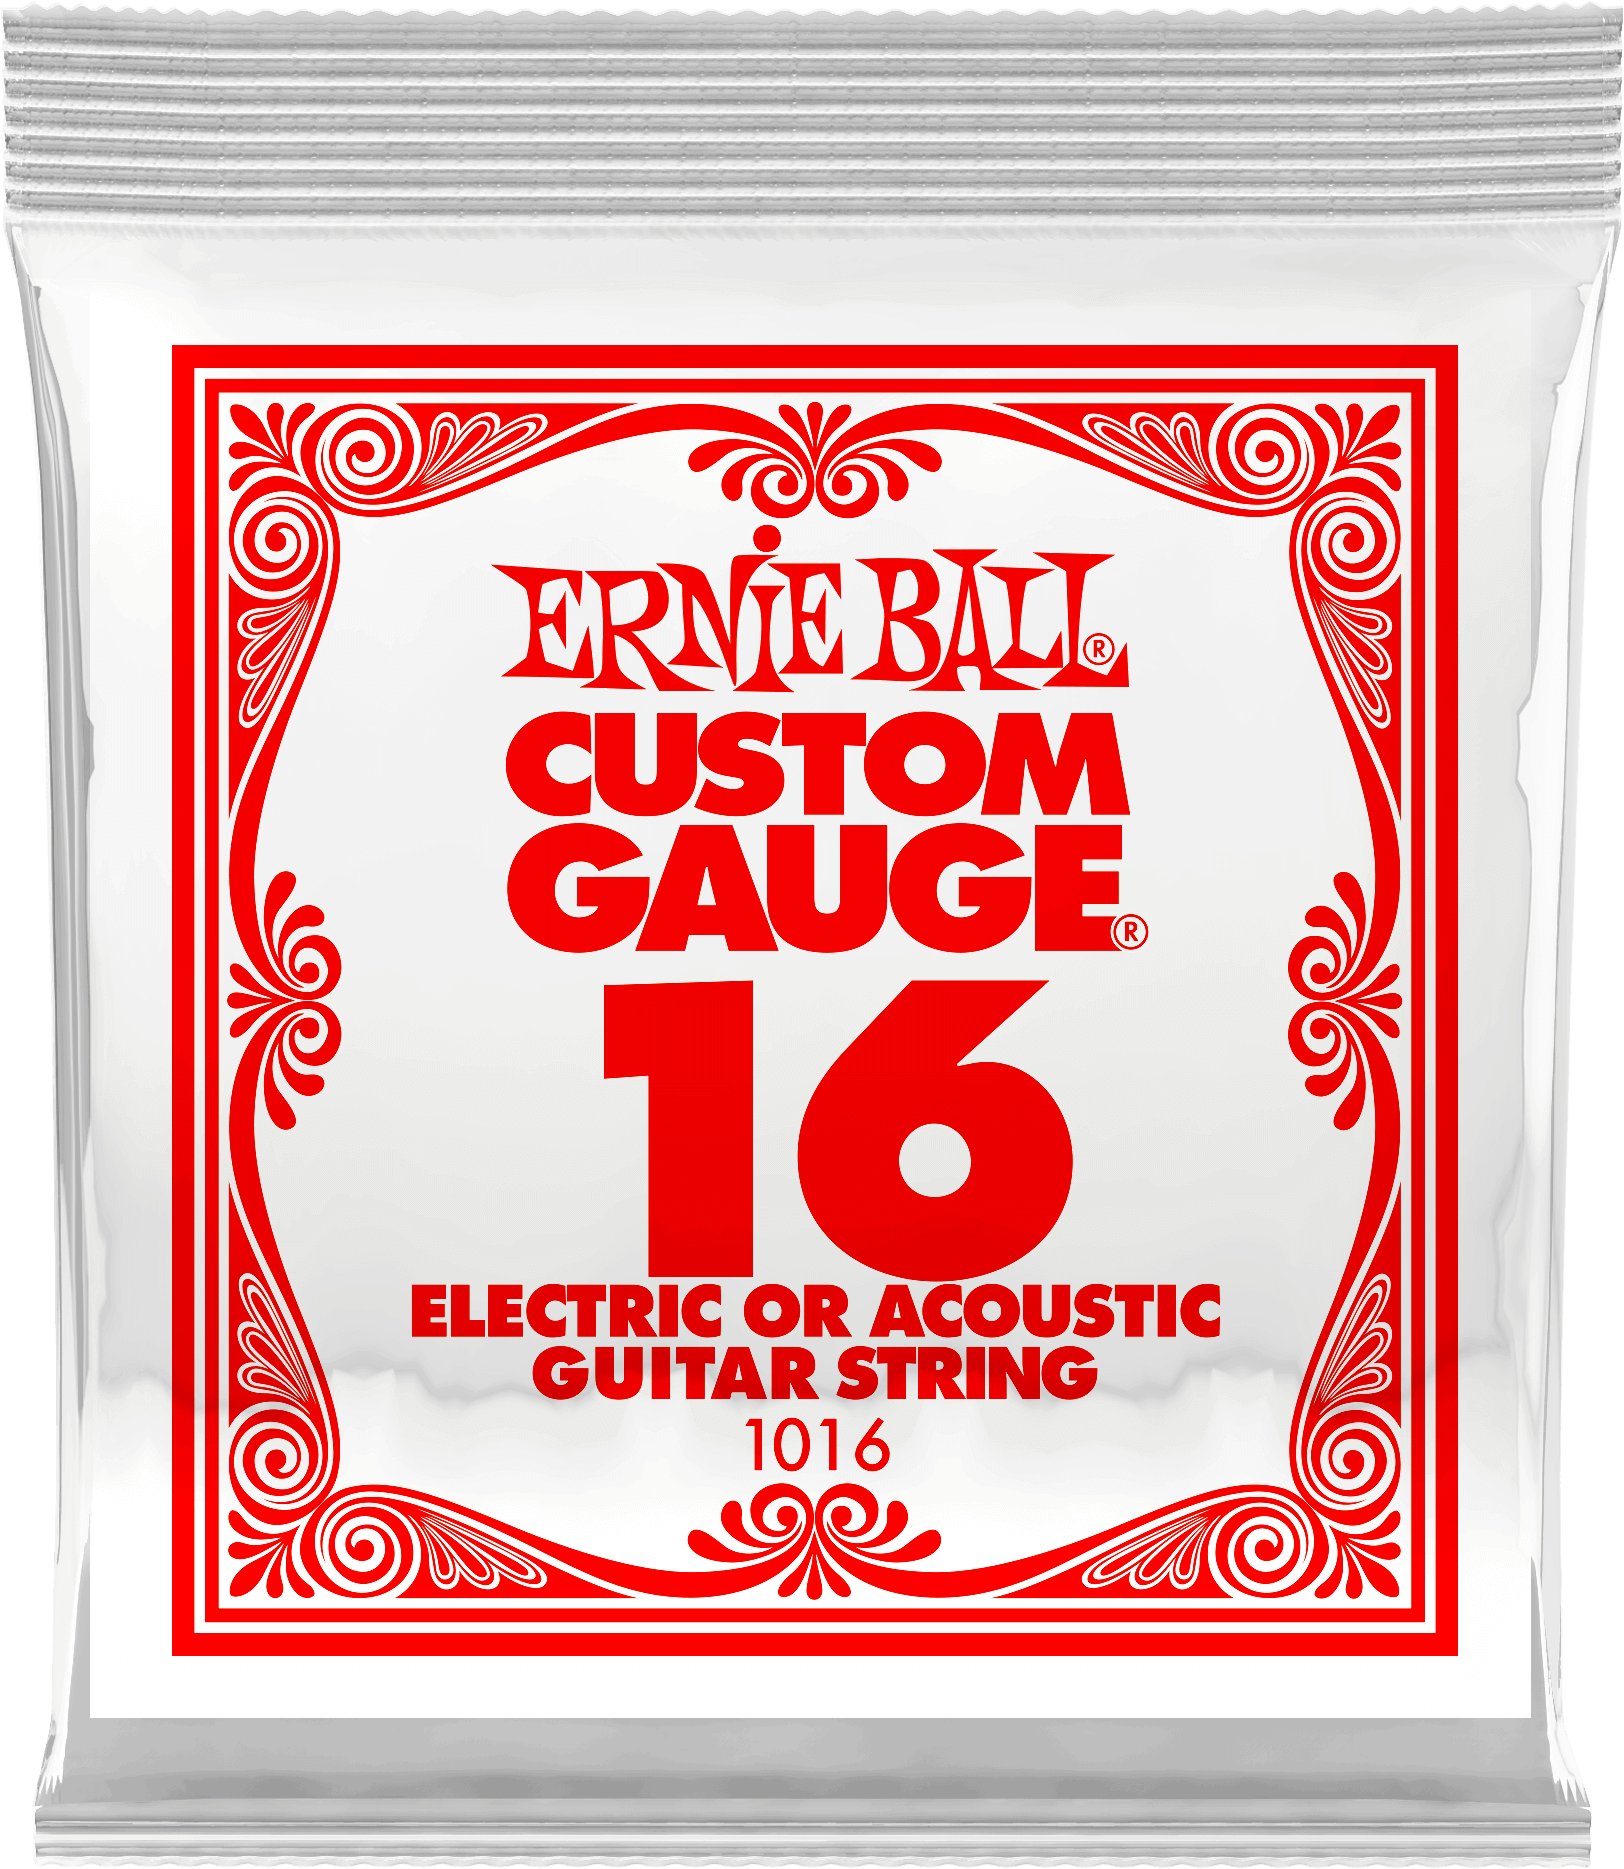 Струна для акустической и электрогитары Ernie Ball P01016 Custom gauge сталь калибр 16 Ernie Ball (Эрни Бол)